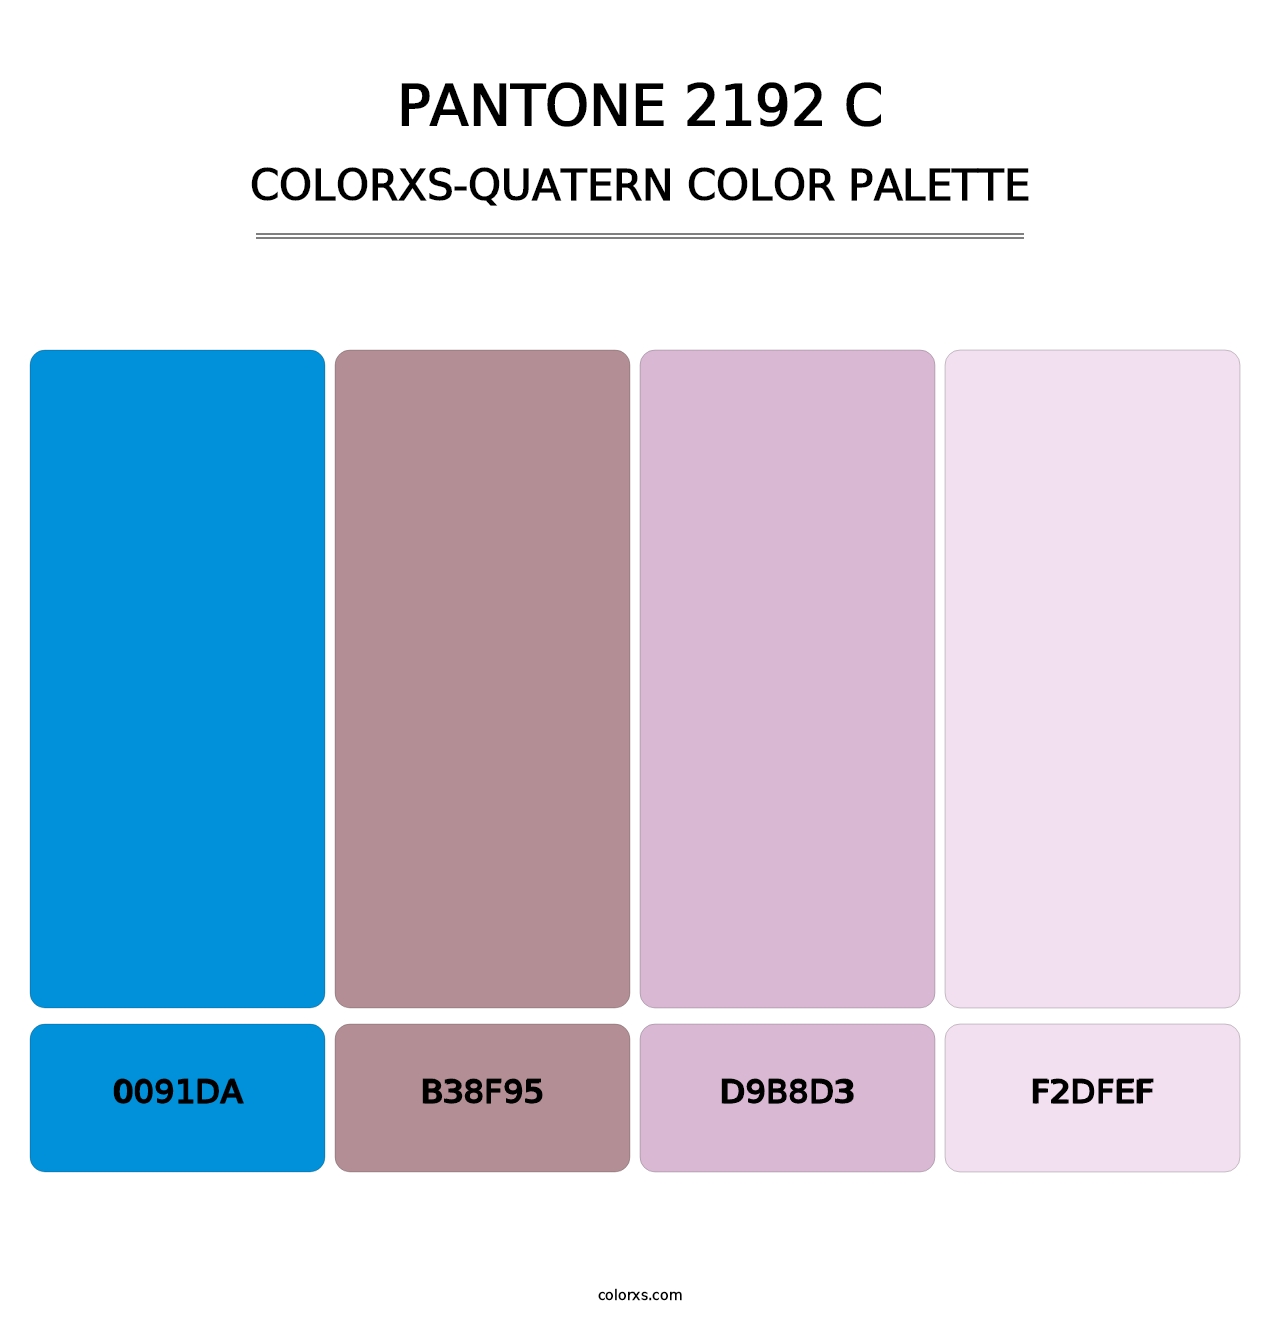 PANTONE 2192 C - Colorxs Quatern Palette